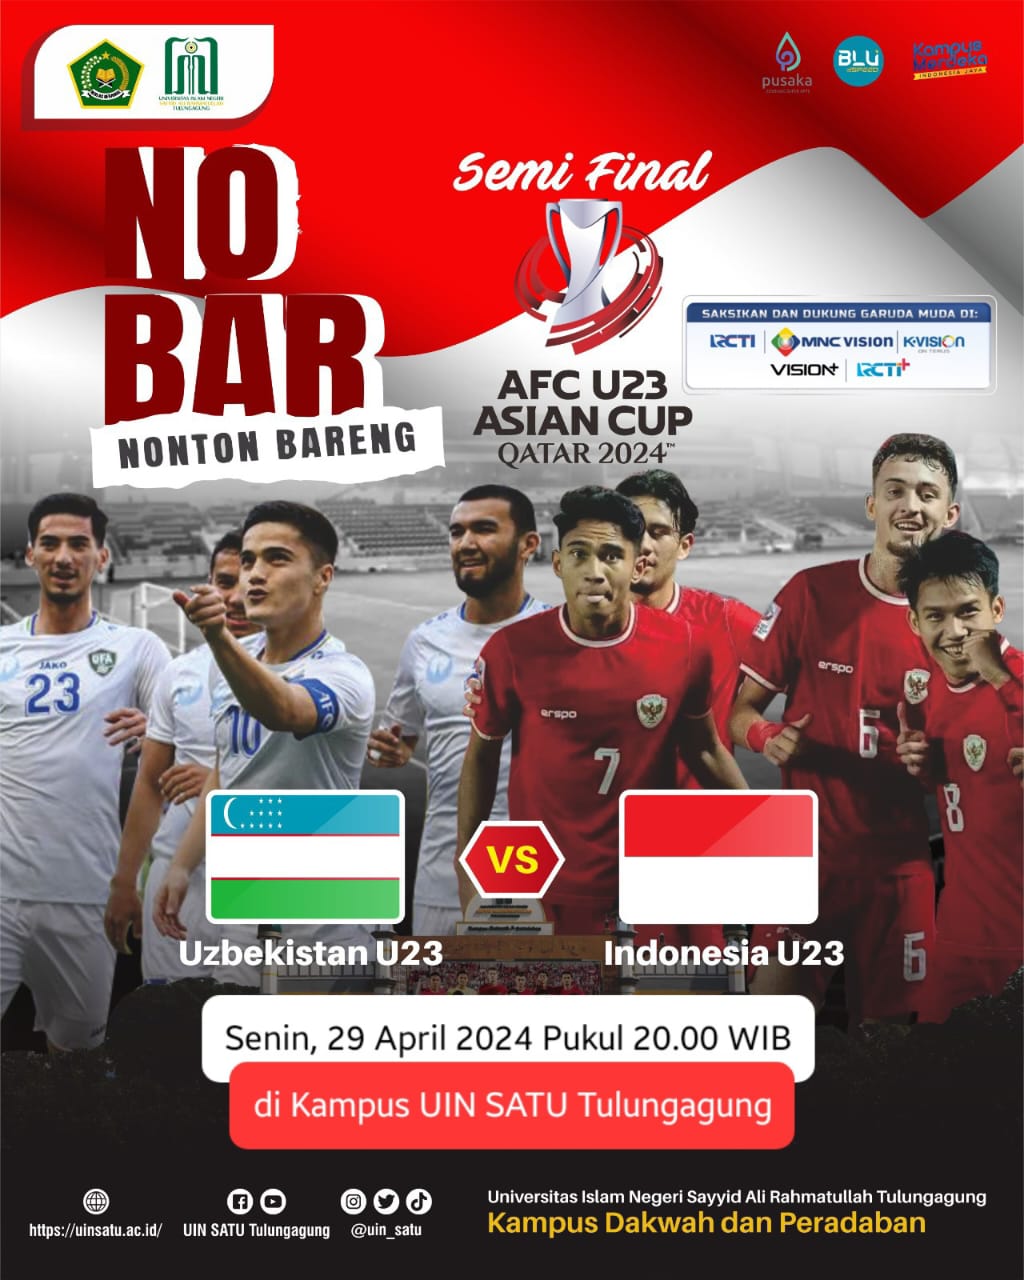 NONTON BARENG Semifinal AFC U23 Asian Cup Qatar 2024 Indonesia vs Uzbekistan